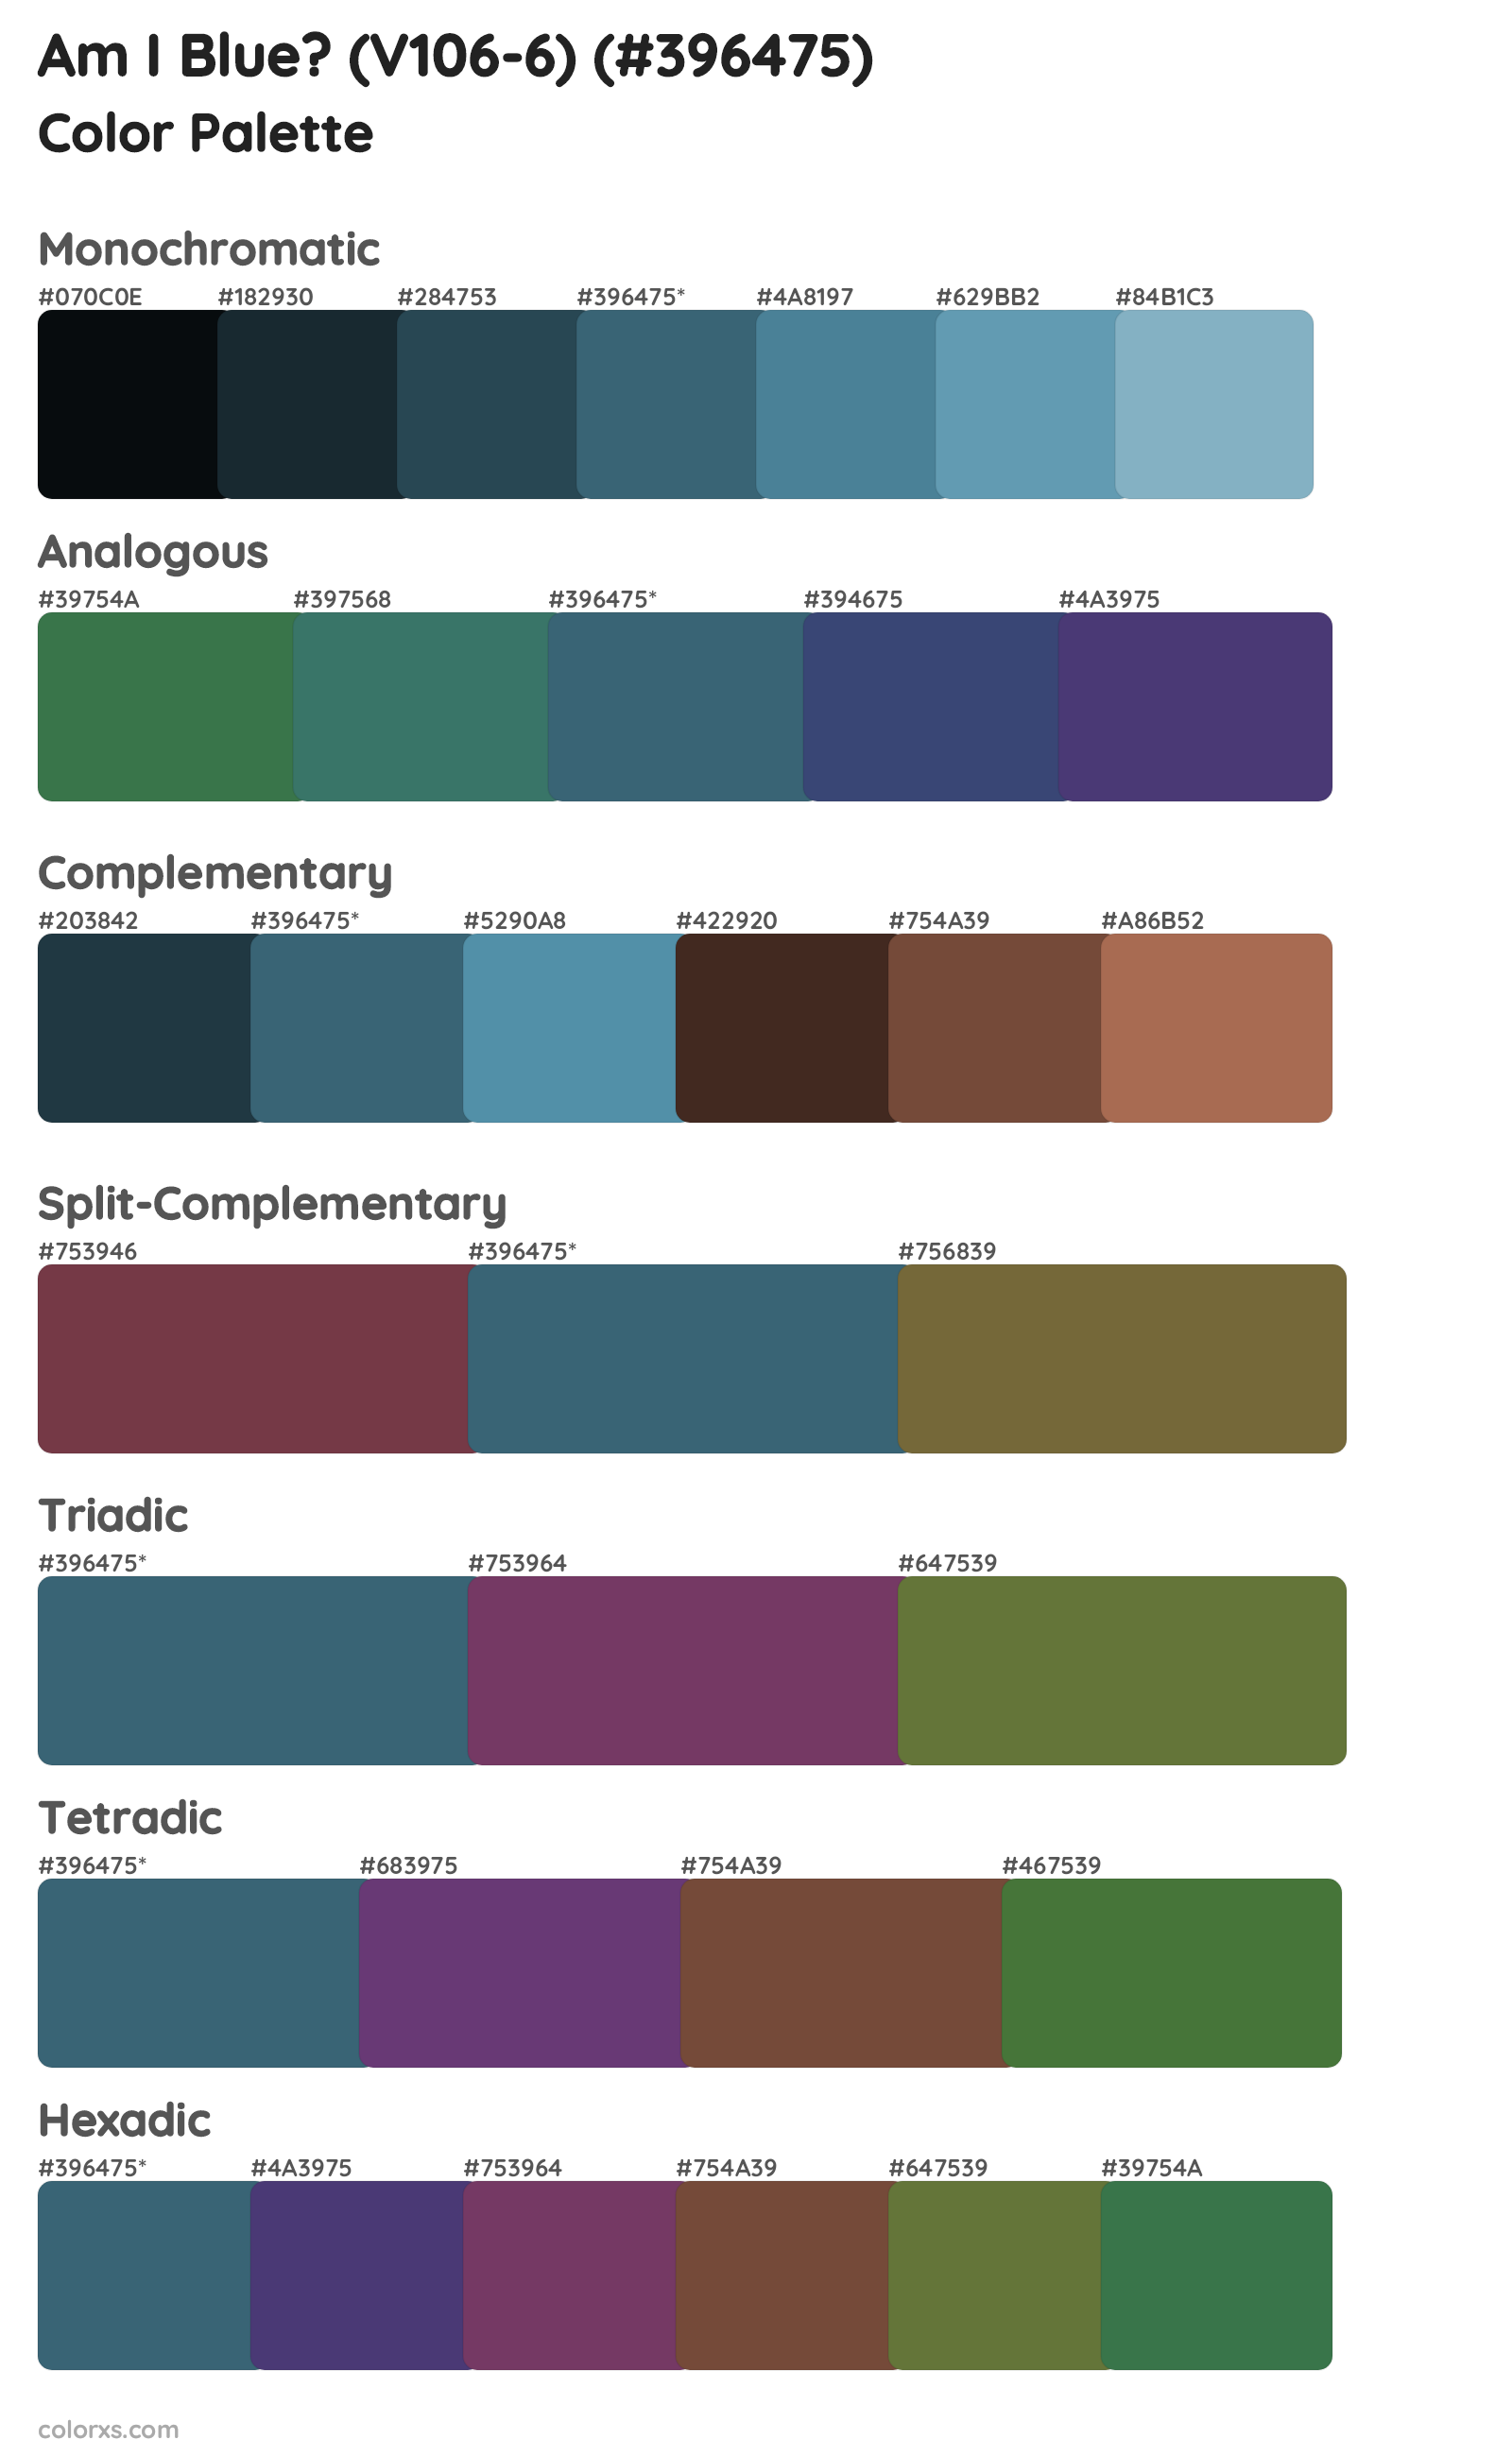 Am I Blue? (V106-6) Color Scheme Palettes